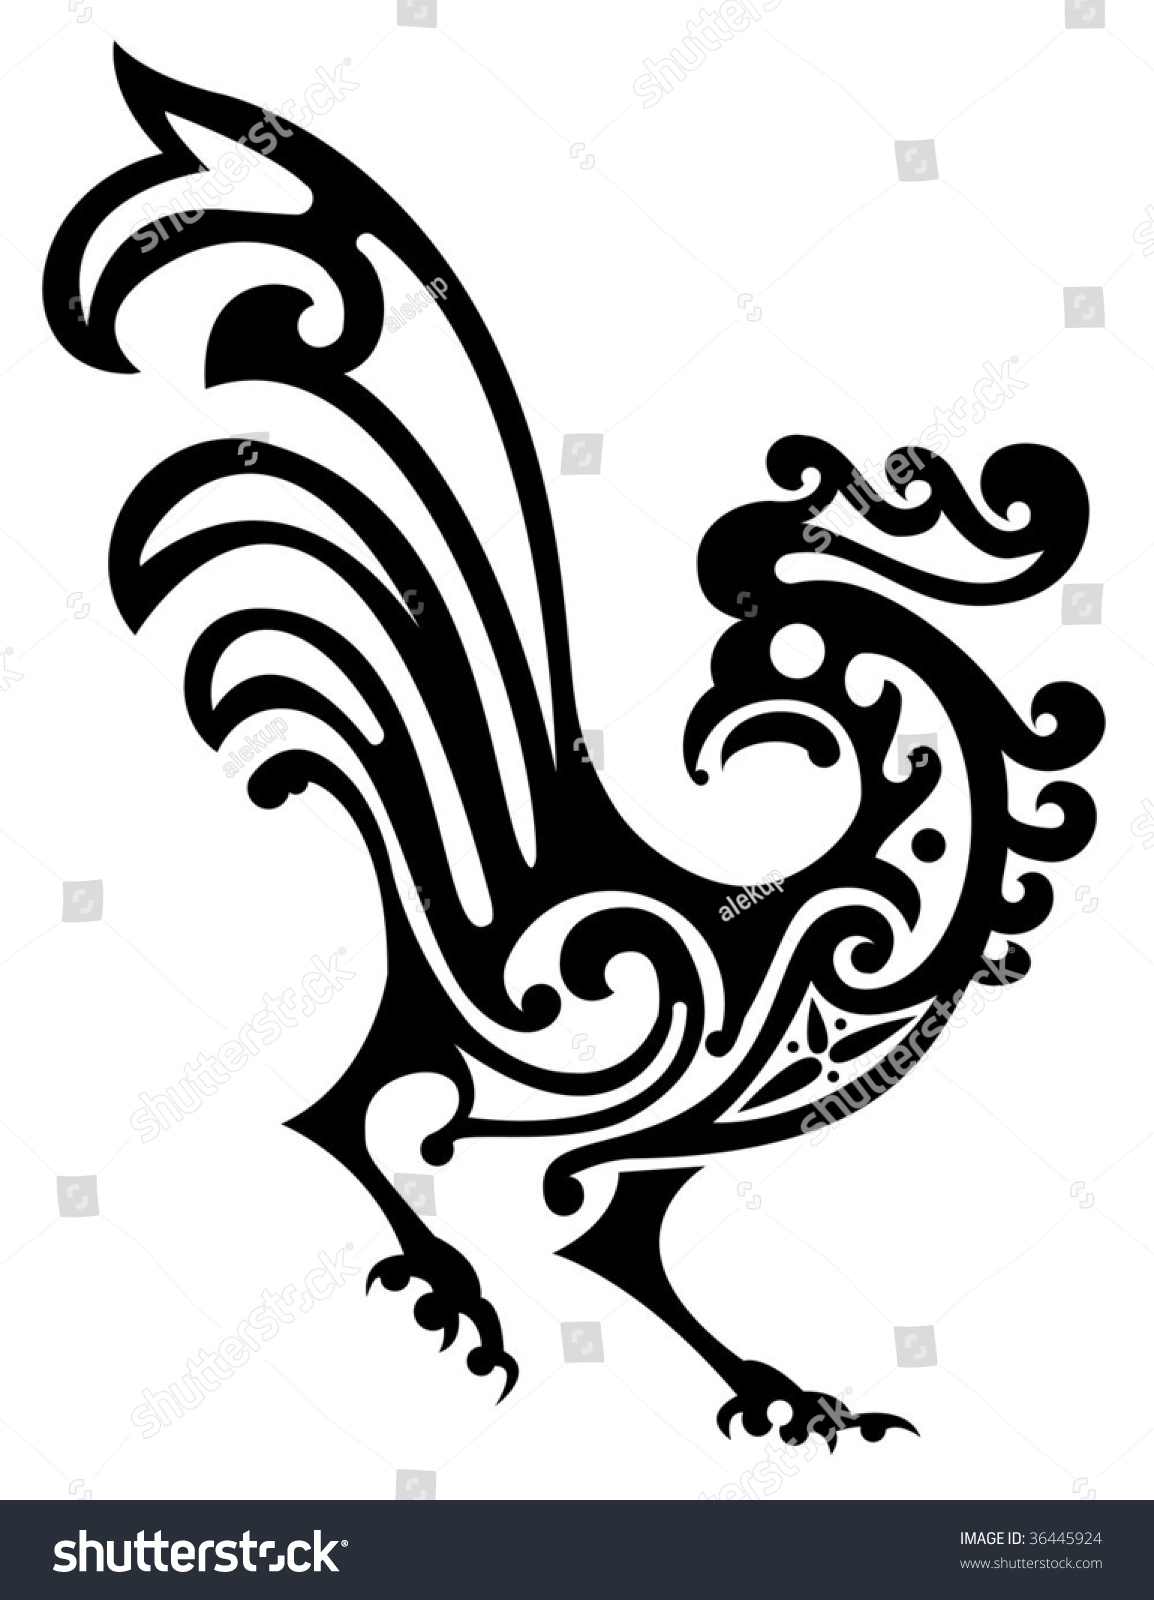 SVG of ornamental rooster svg